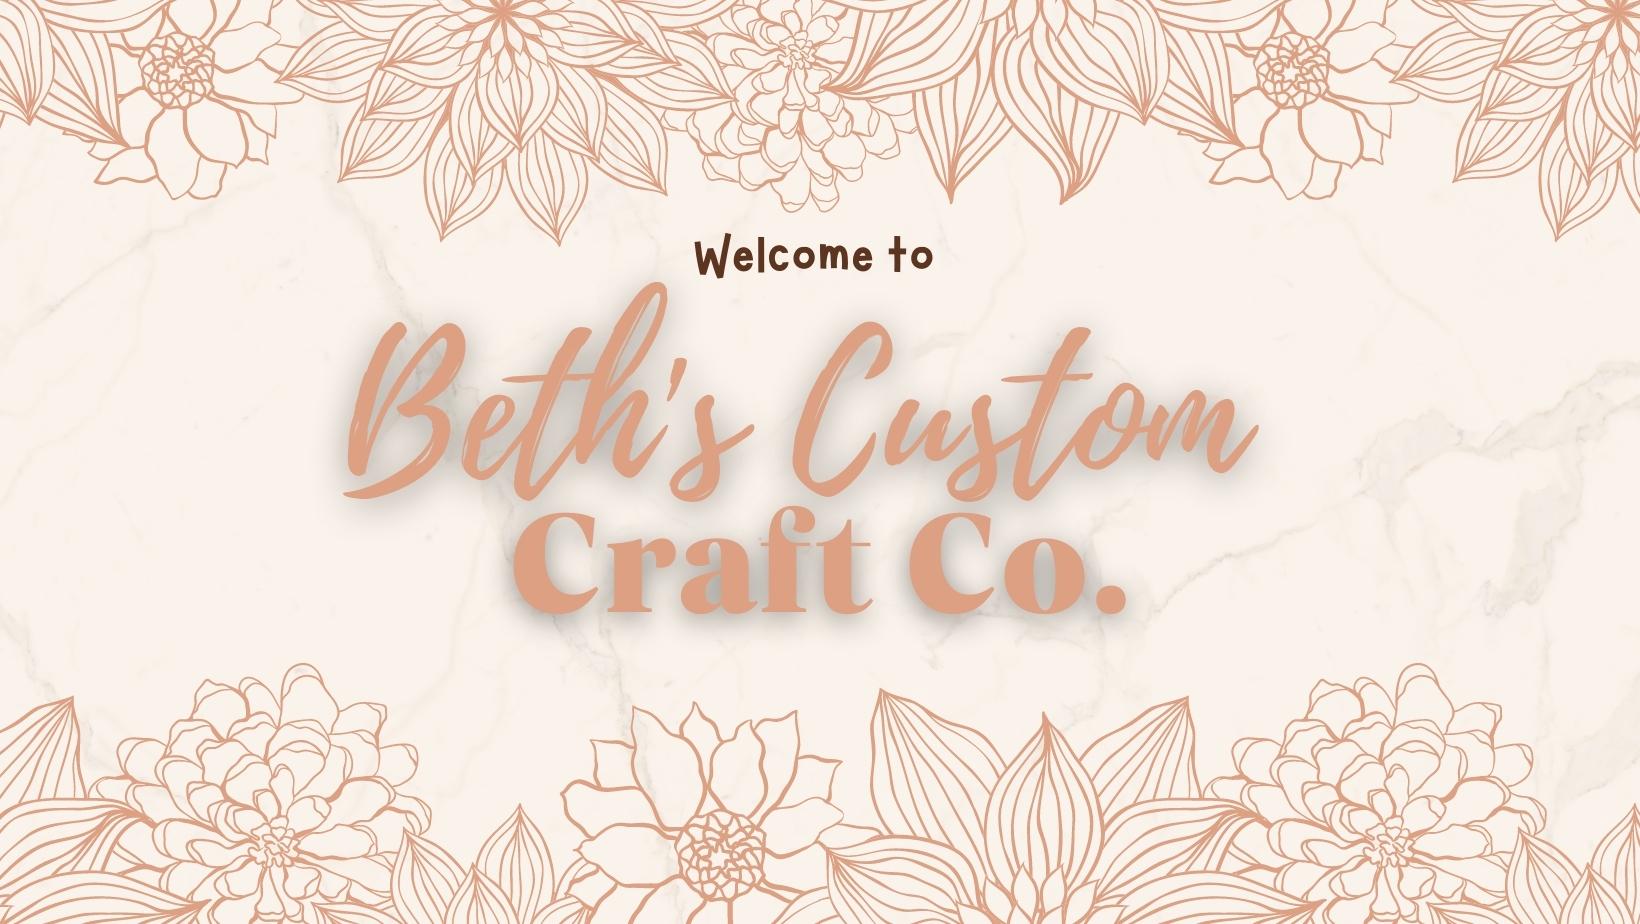 Beths Custom Craft Co